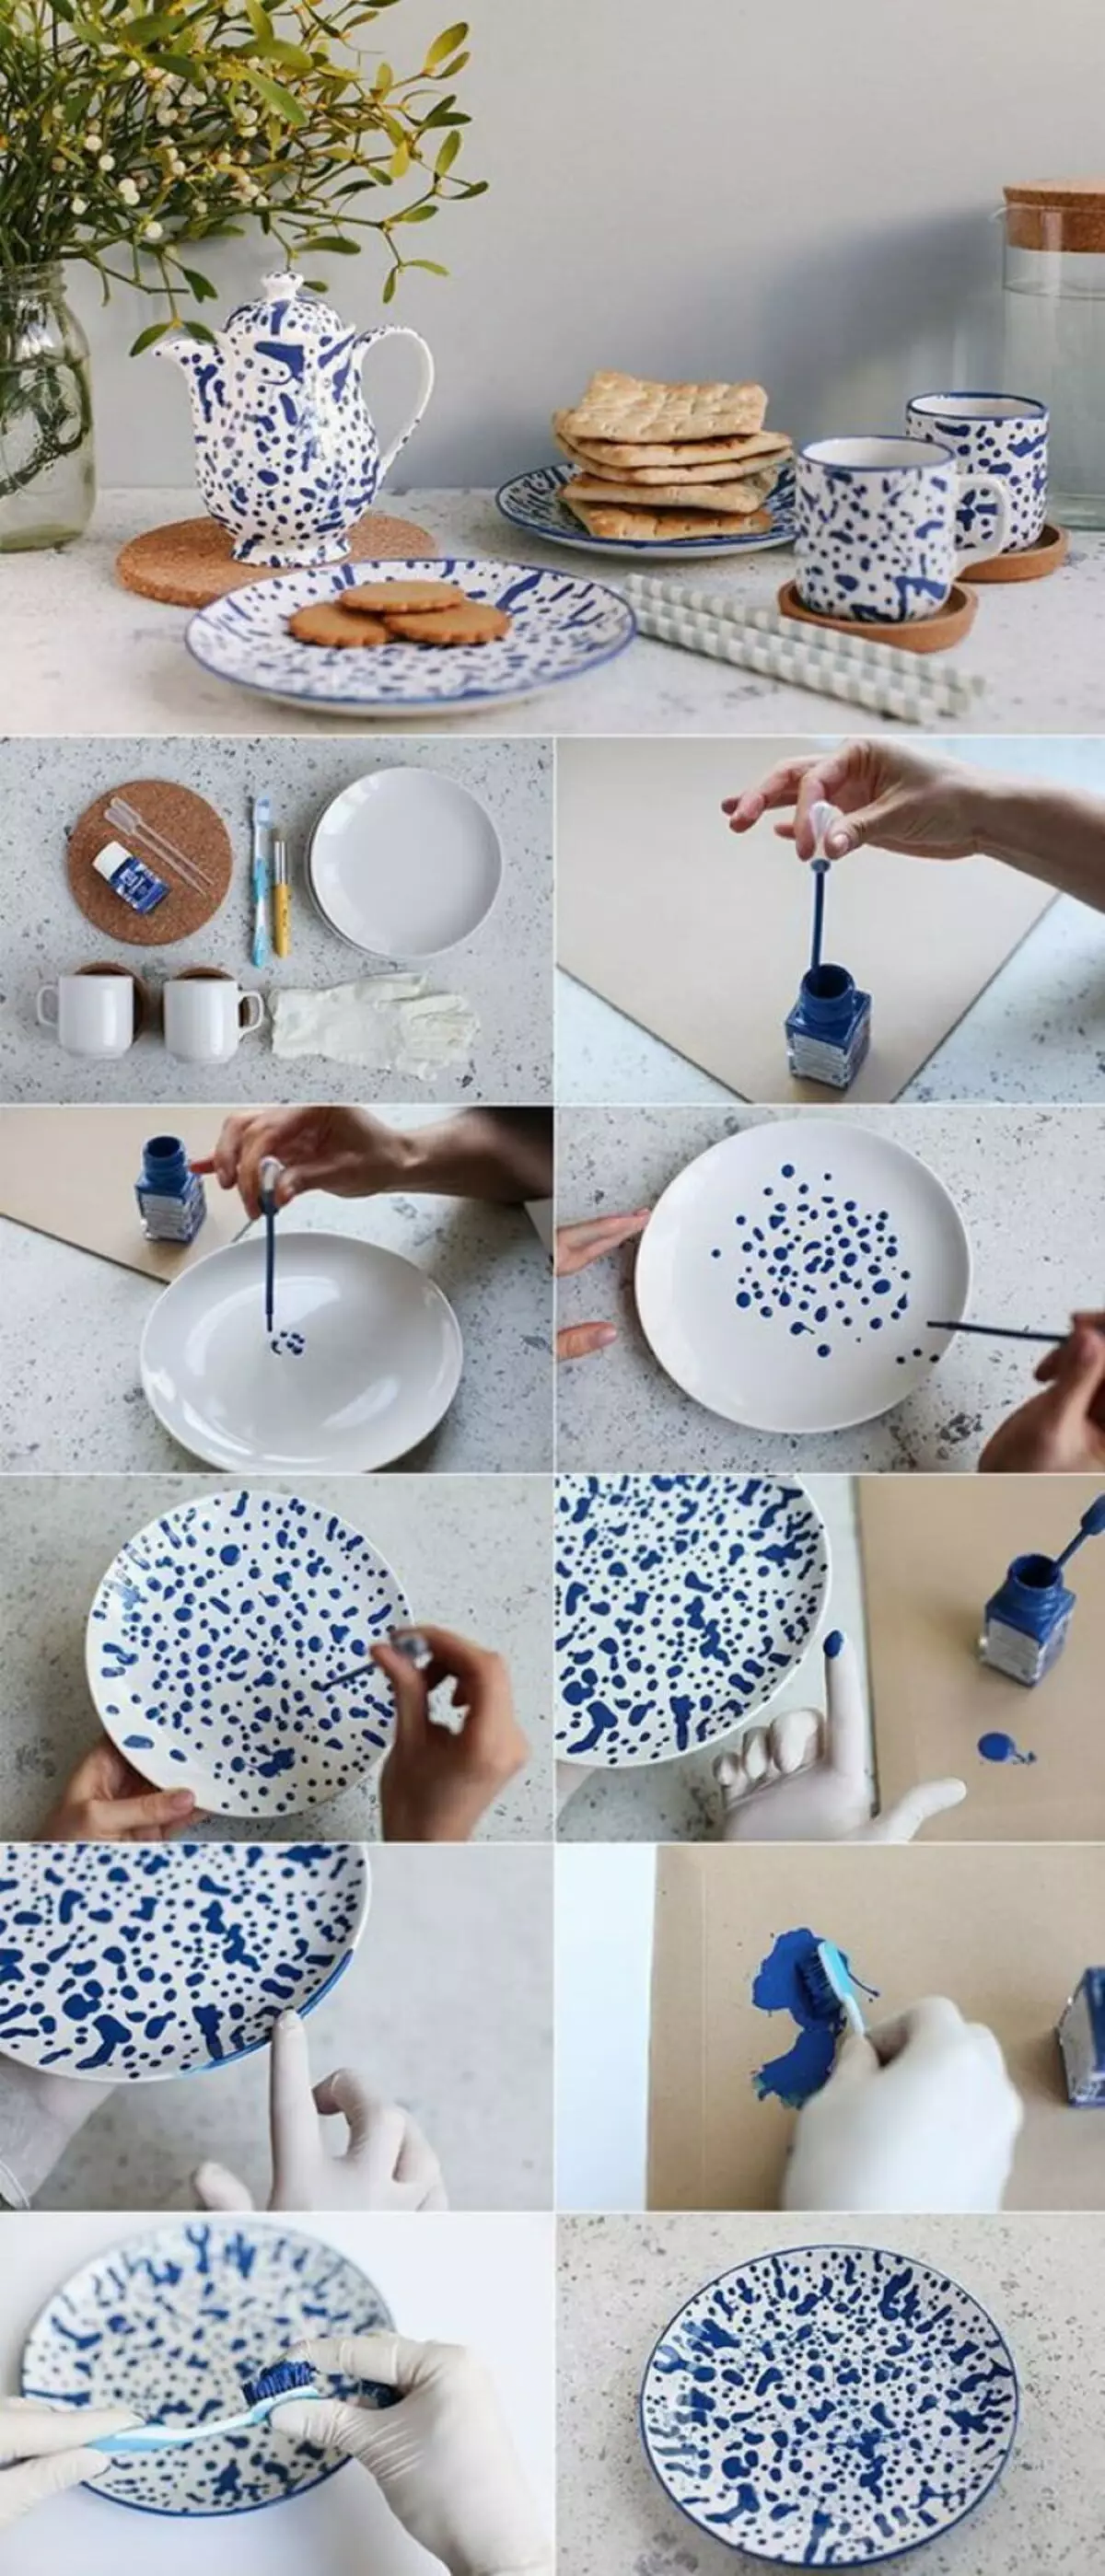 Ръчно изработена керамика: идеи за тези, които мечтаят да работят с глина